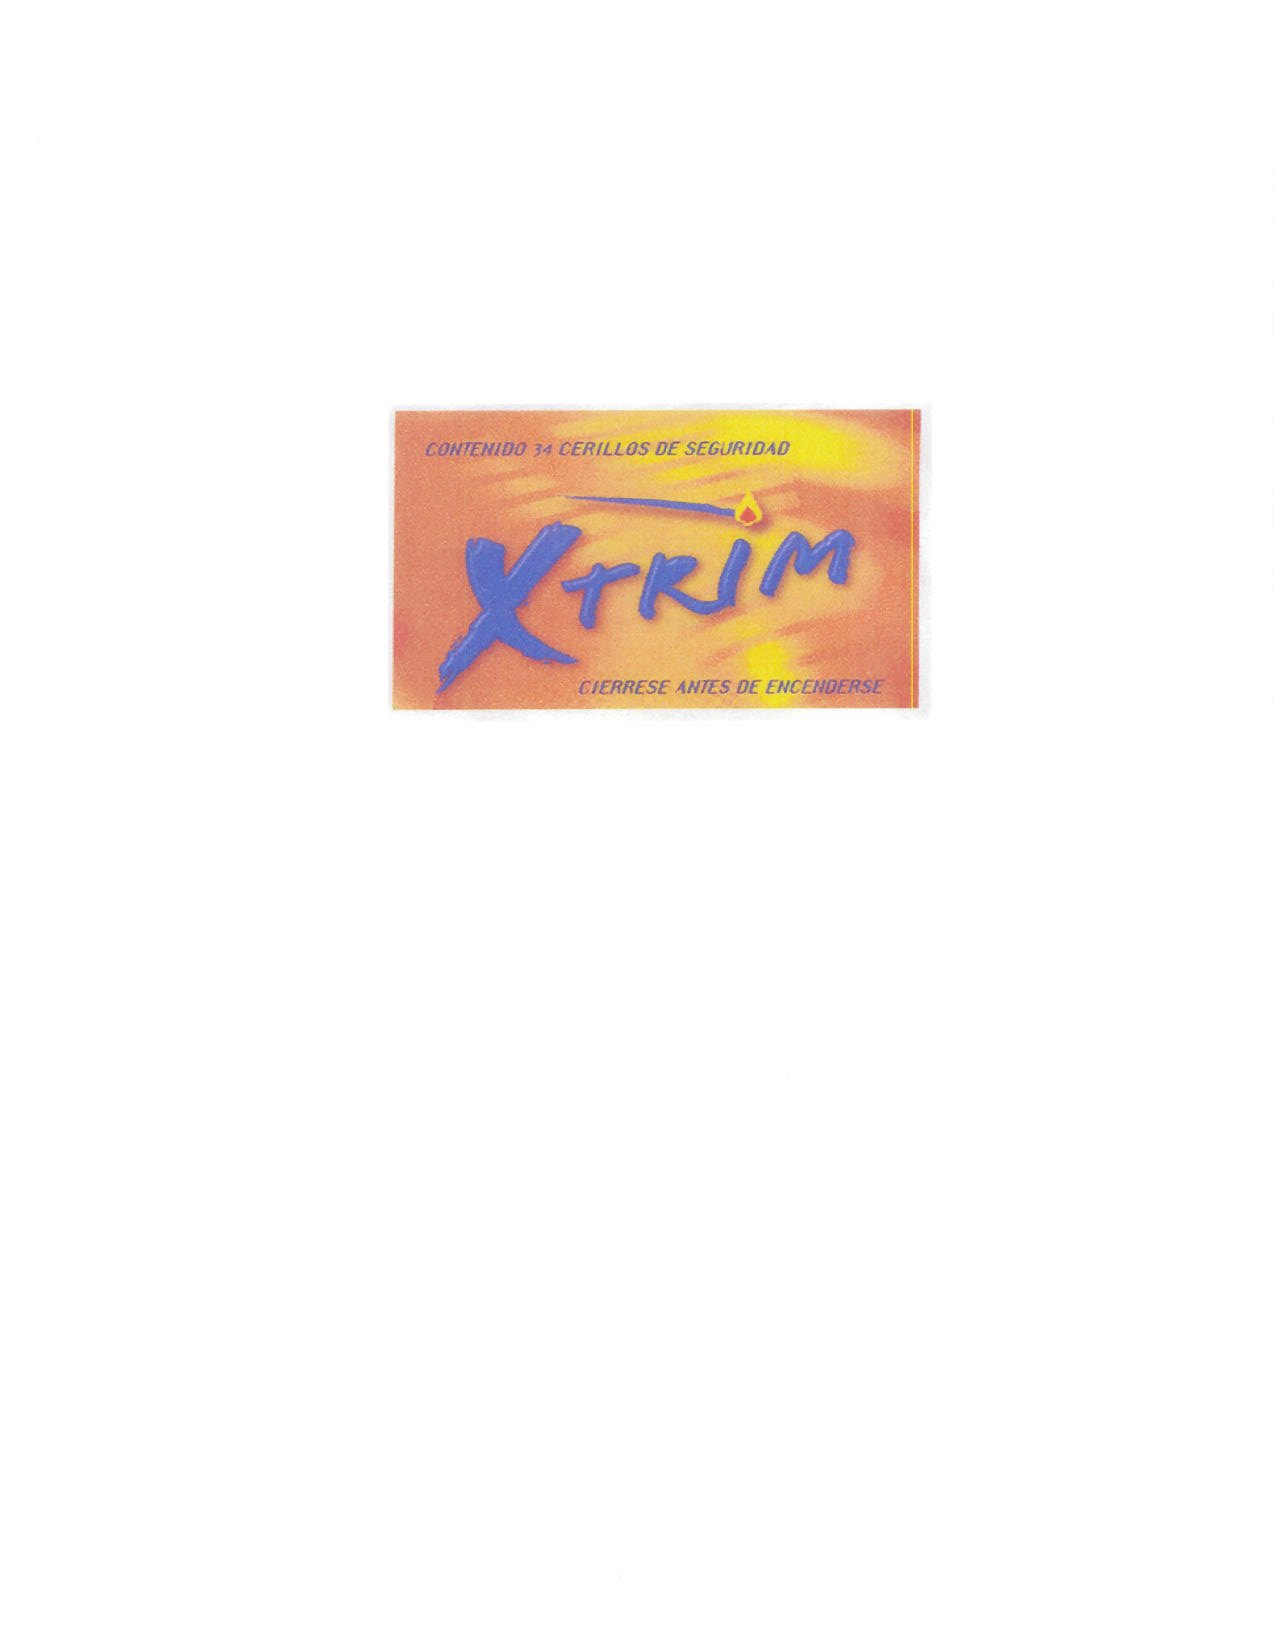 Trademark Logo XTRIM CONTENIDO 34 CERILLOS DE SEGURIDAO CIERRESE ANTES DE ENCENDERSE